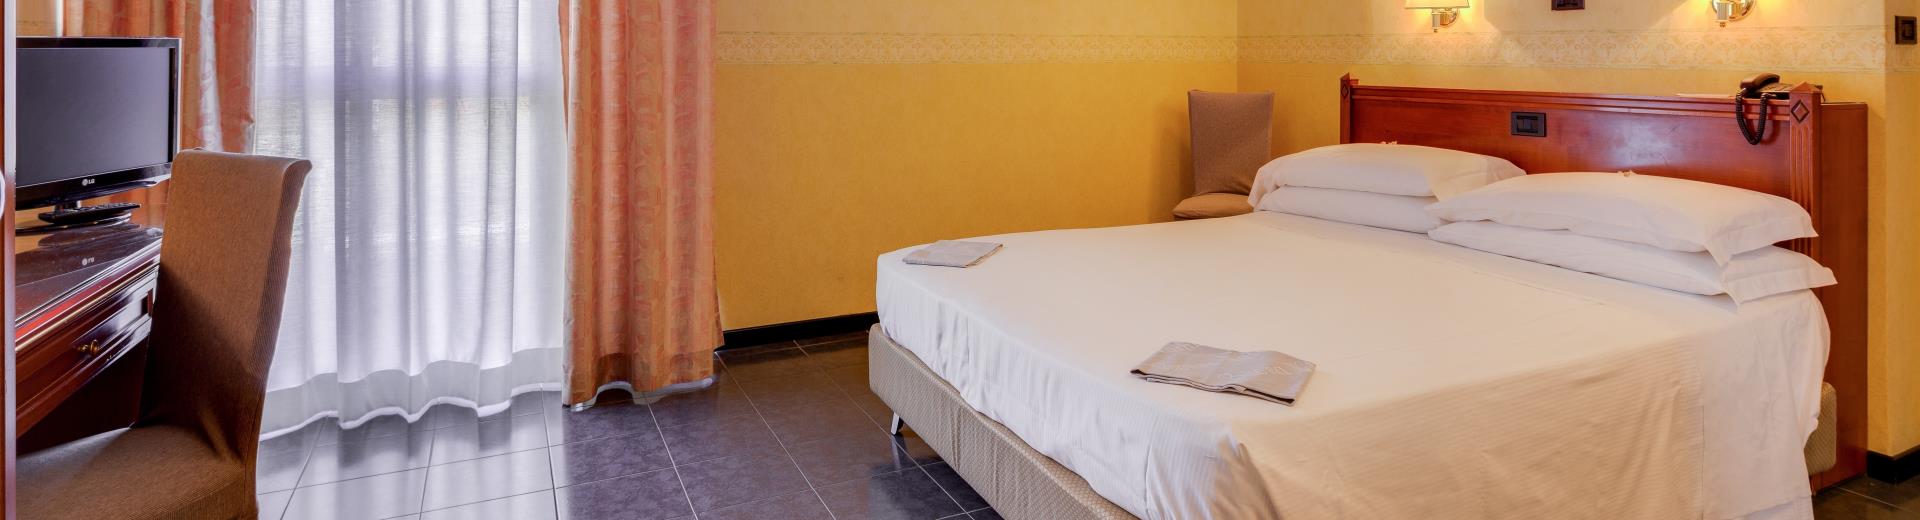 Scopri le camere classic del Hotel San Donato 4 stelle a Bologna